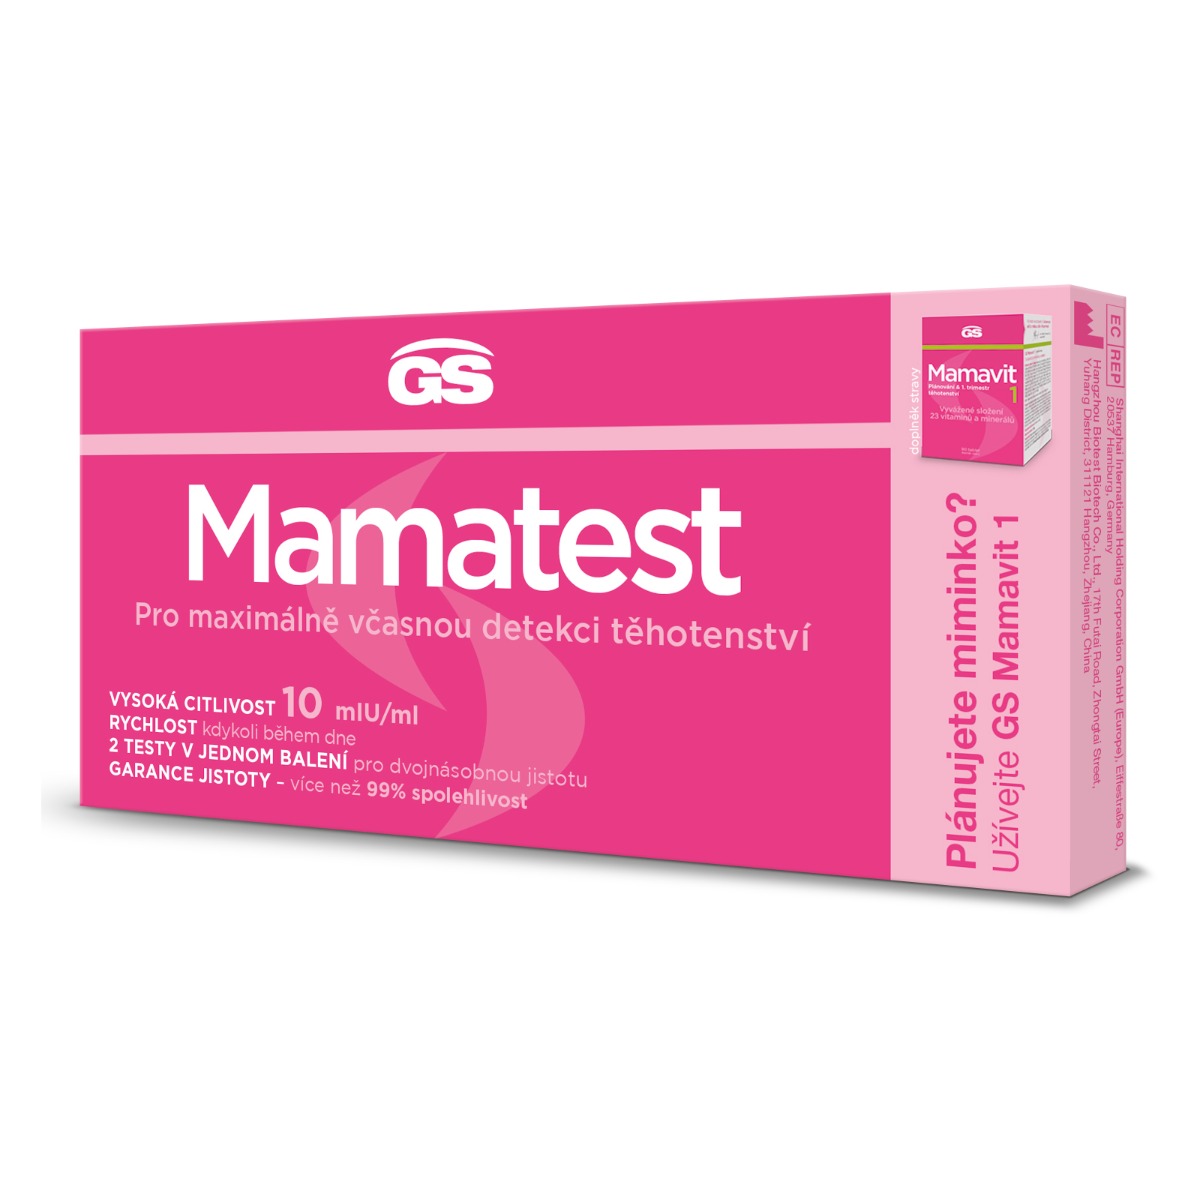 GS Mamatest těhotenský test 2 ks GS